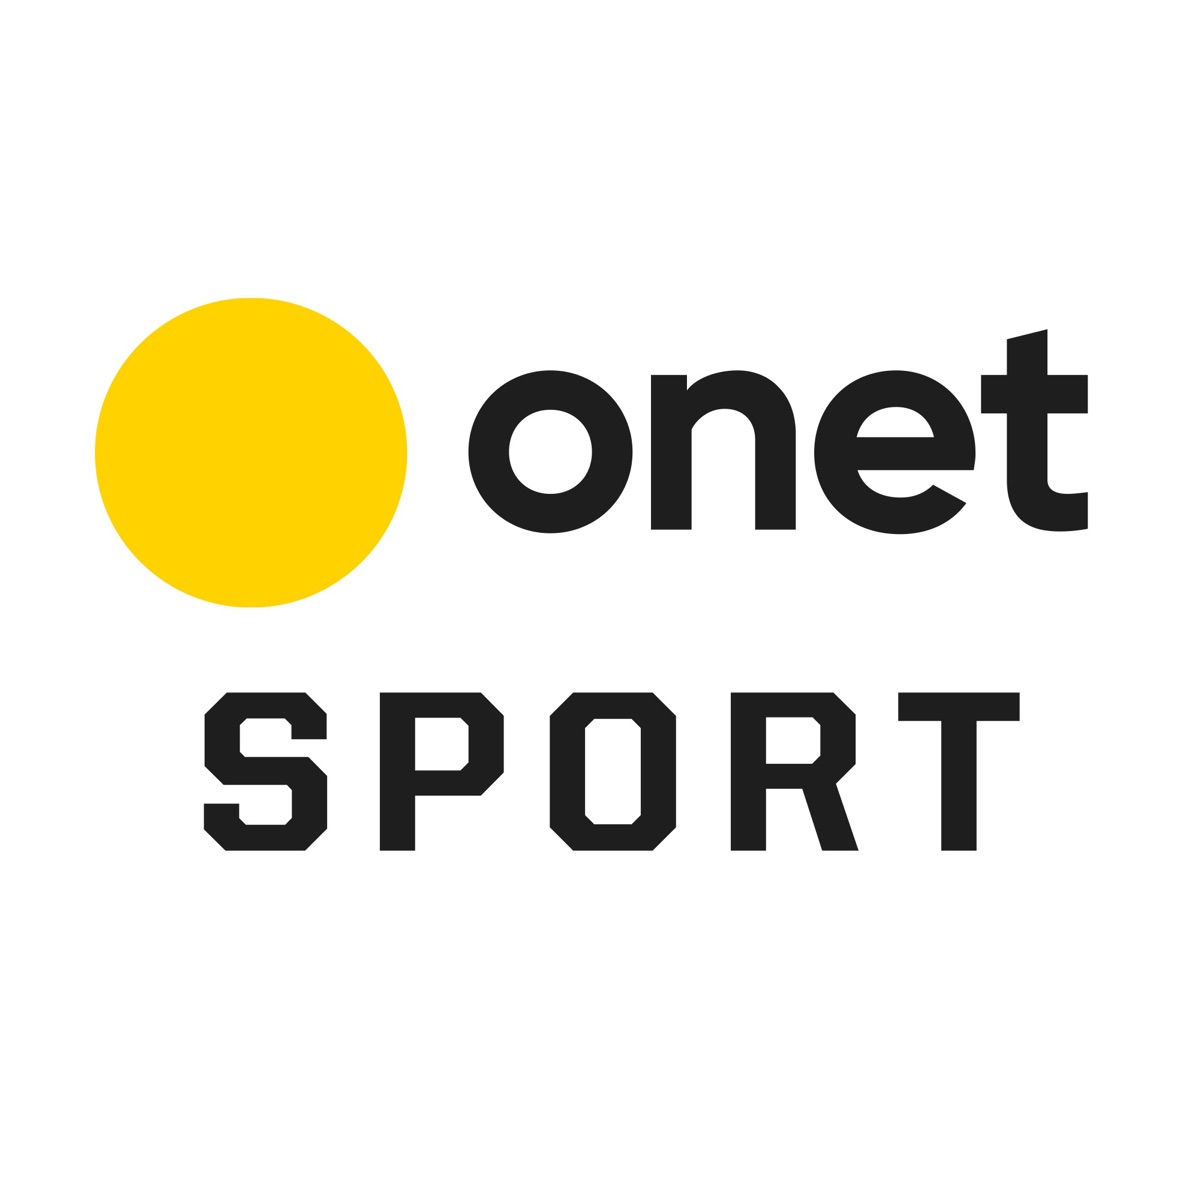 relacionados-onet-sport-podcast-podtail